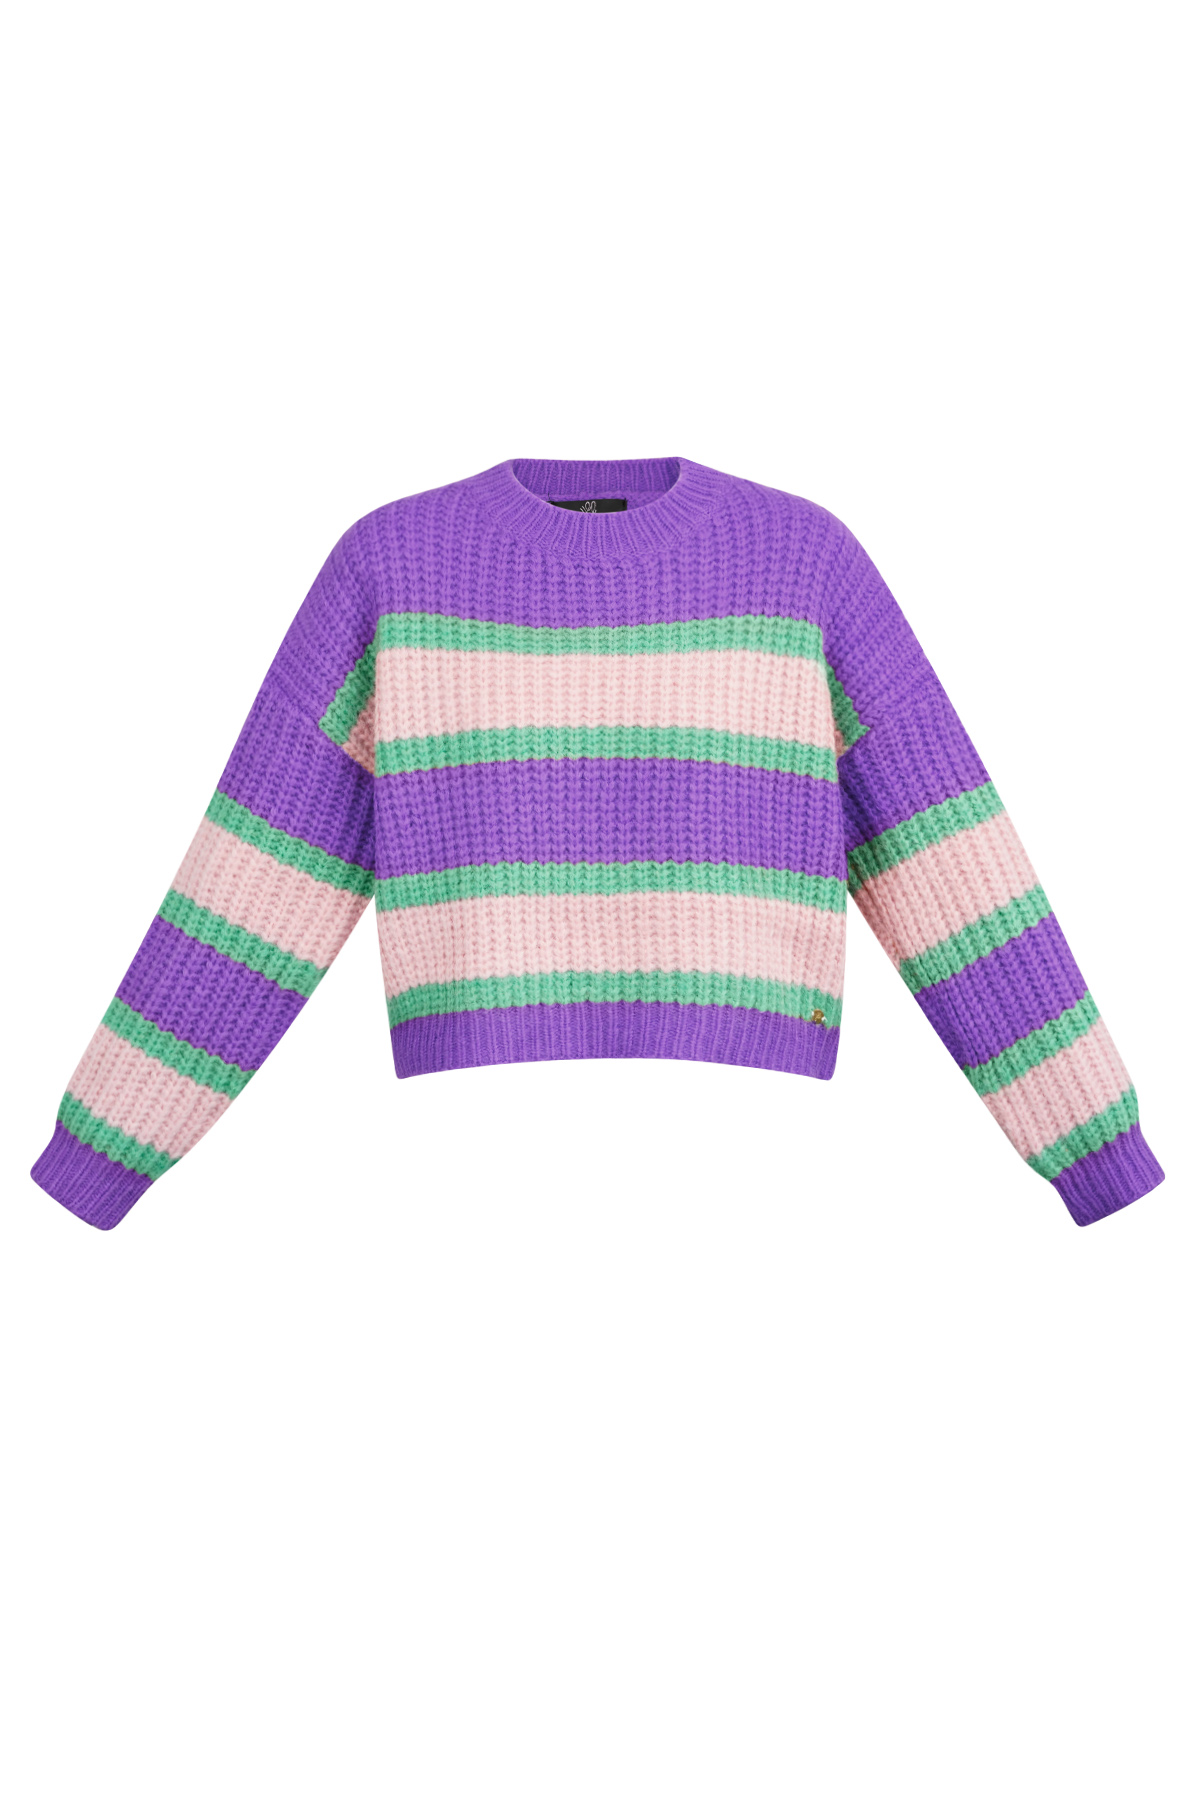 Maglione lavorato a maglia tricolore con striscia: rosa viola